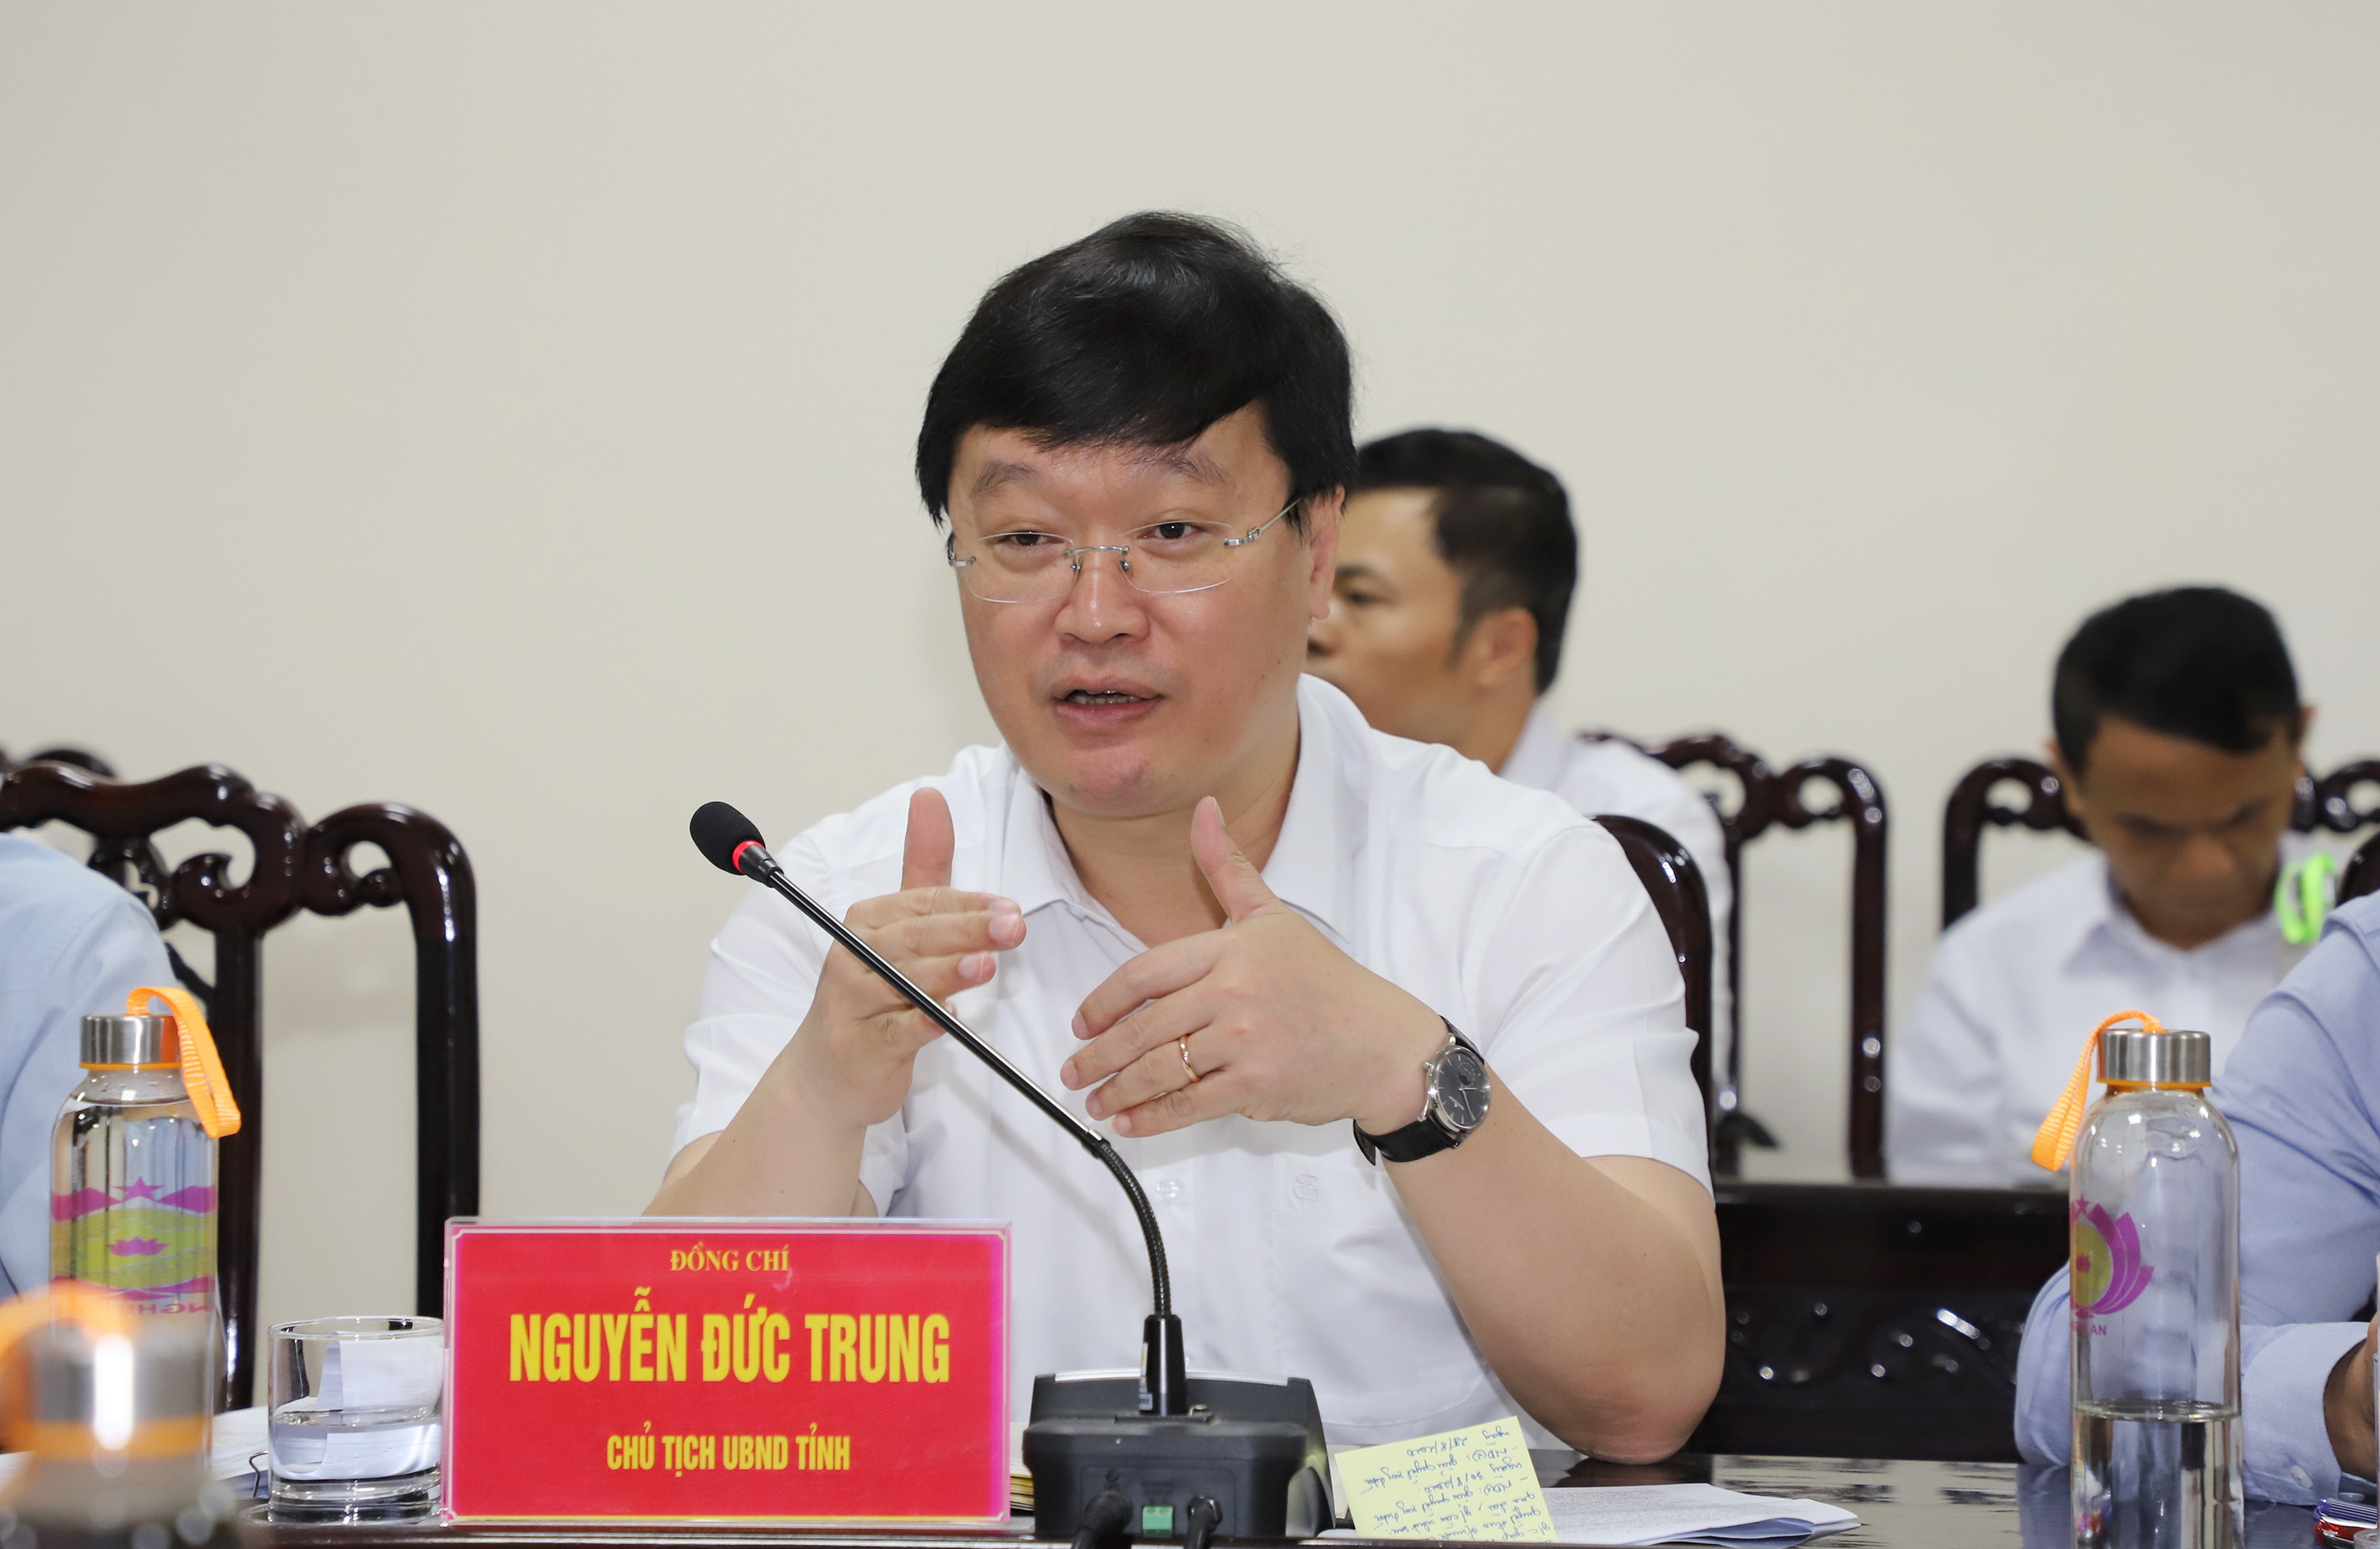 Chủ tịch UBND tỉnh Nguyễn Đức Trung kết luận các nội dung mà công dân kiến nghị. Ảnh: Phạm Bằng